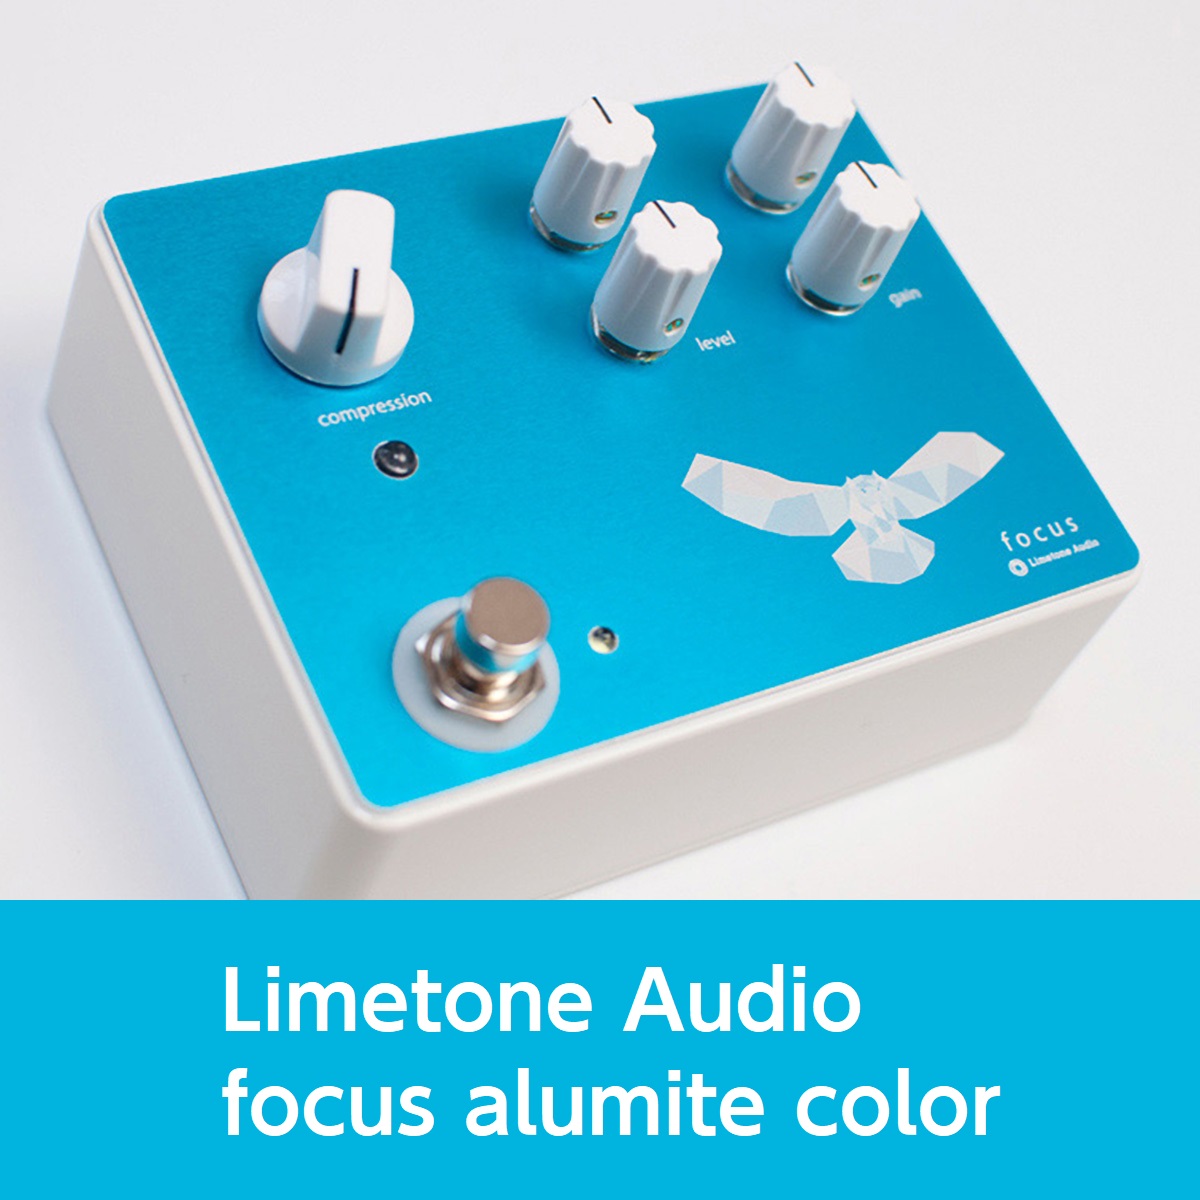 幅広く対応したスタジオ機器クオリティのコンプレッサー 島村楽器大分店では、Limetone Audio(ライムトーンオーディオ)『focus alumite color』を販売中です！ つまみは、compression、level、gain、treble、bassの5つ。スレッショルドやレシオ、アタ […]